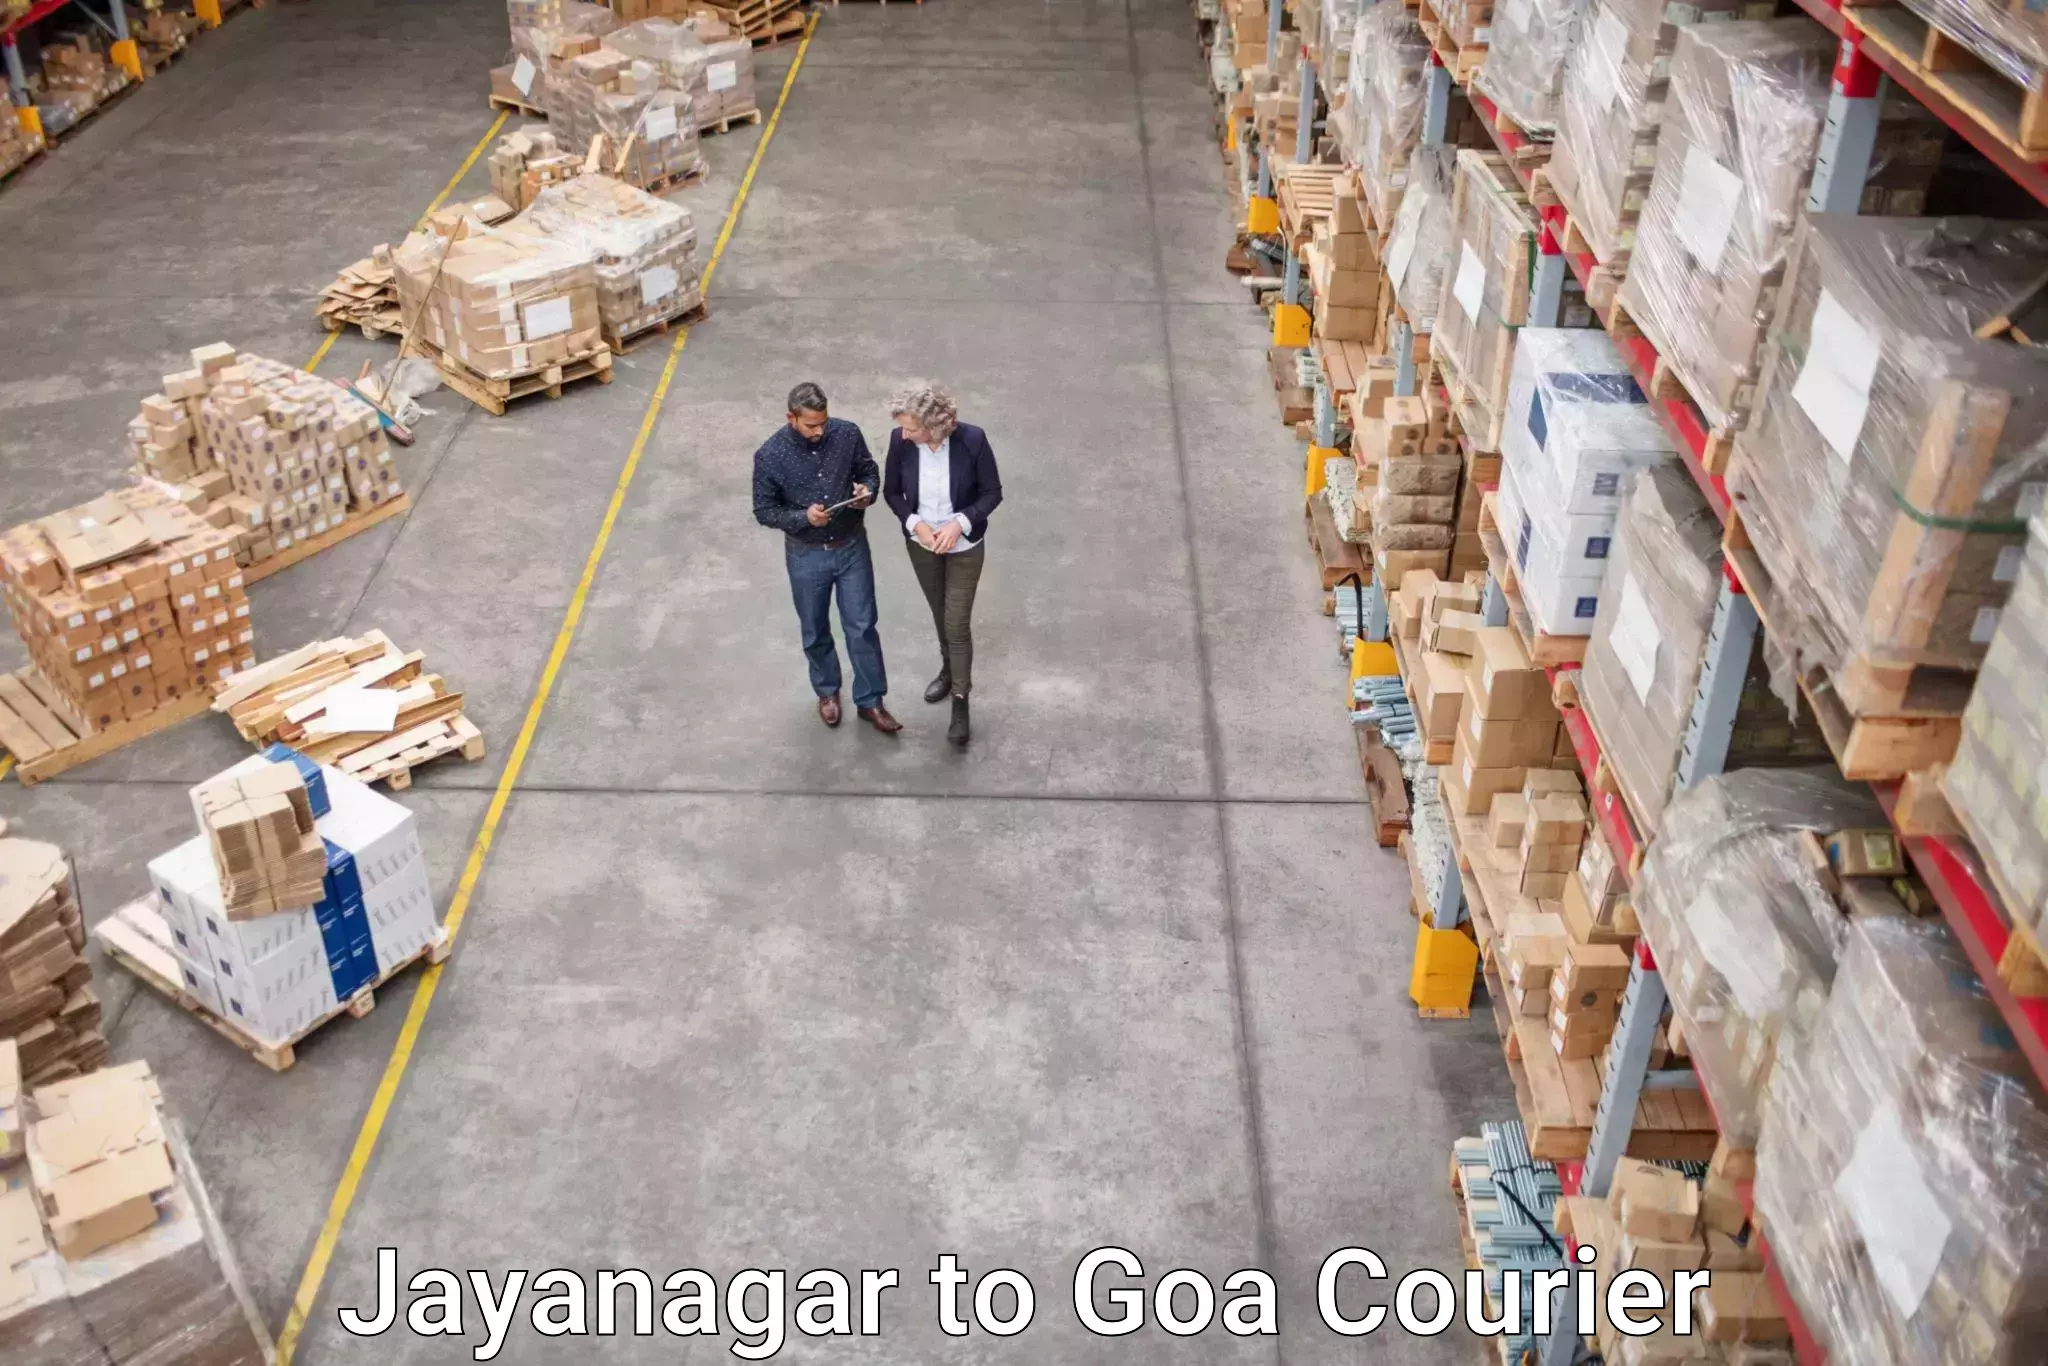 High-speed parcel service Jayanagar to Goa